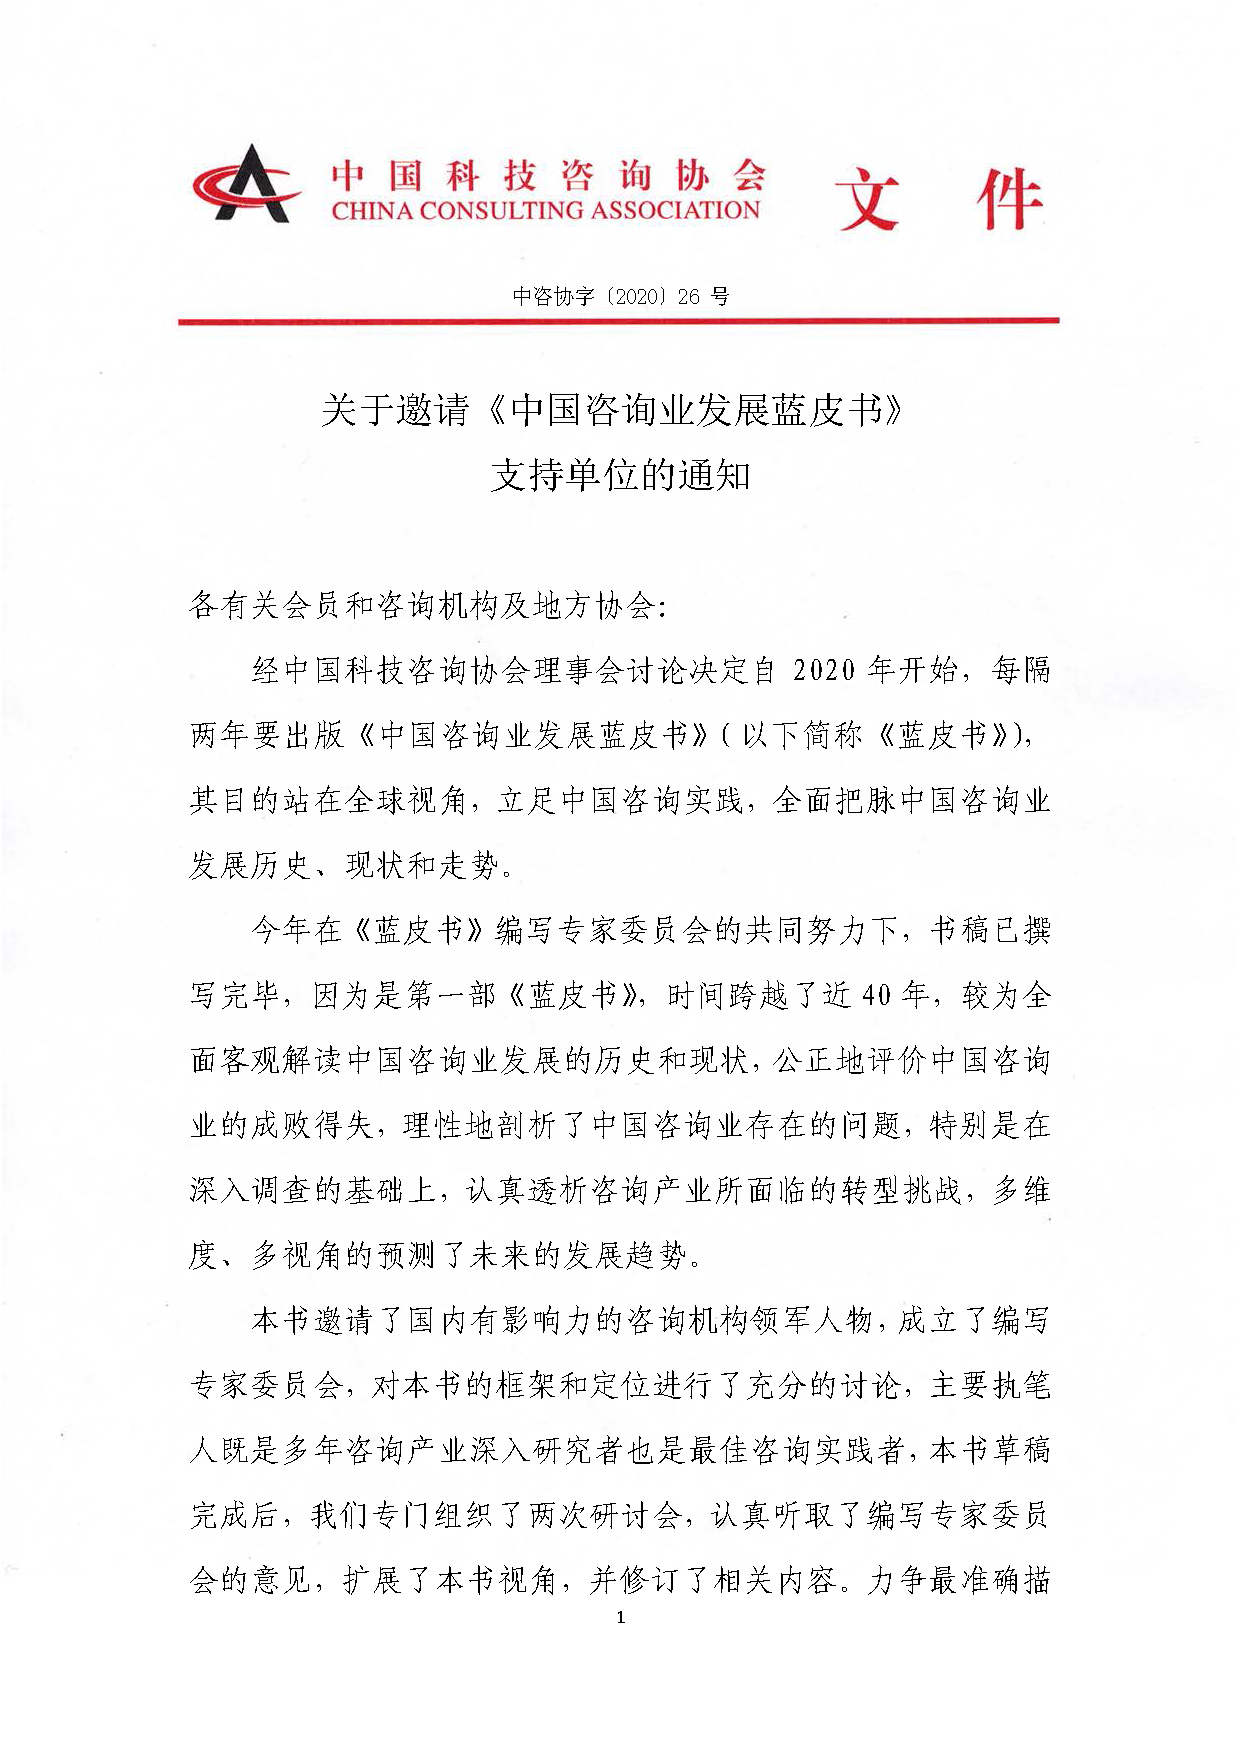 关于邀请《中国咨询业发展蓝皮书》支持单位的通知_页面_1.png